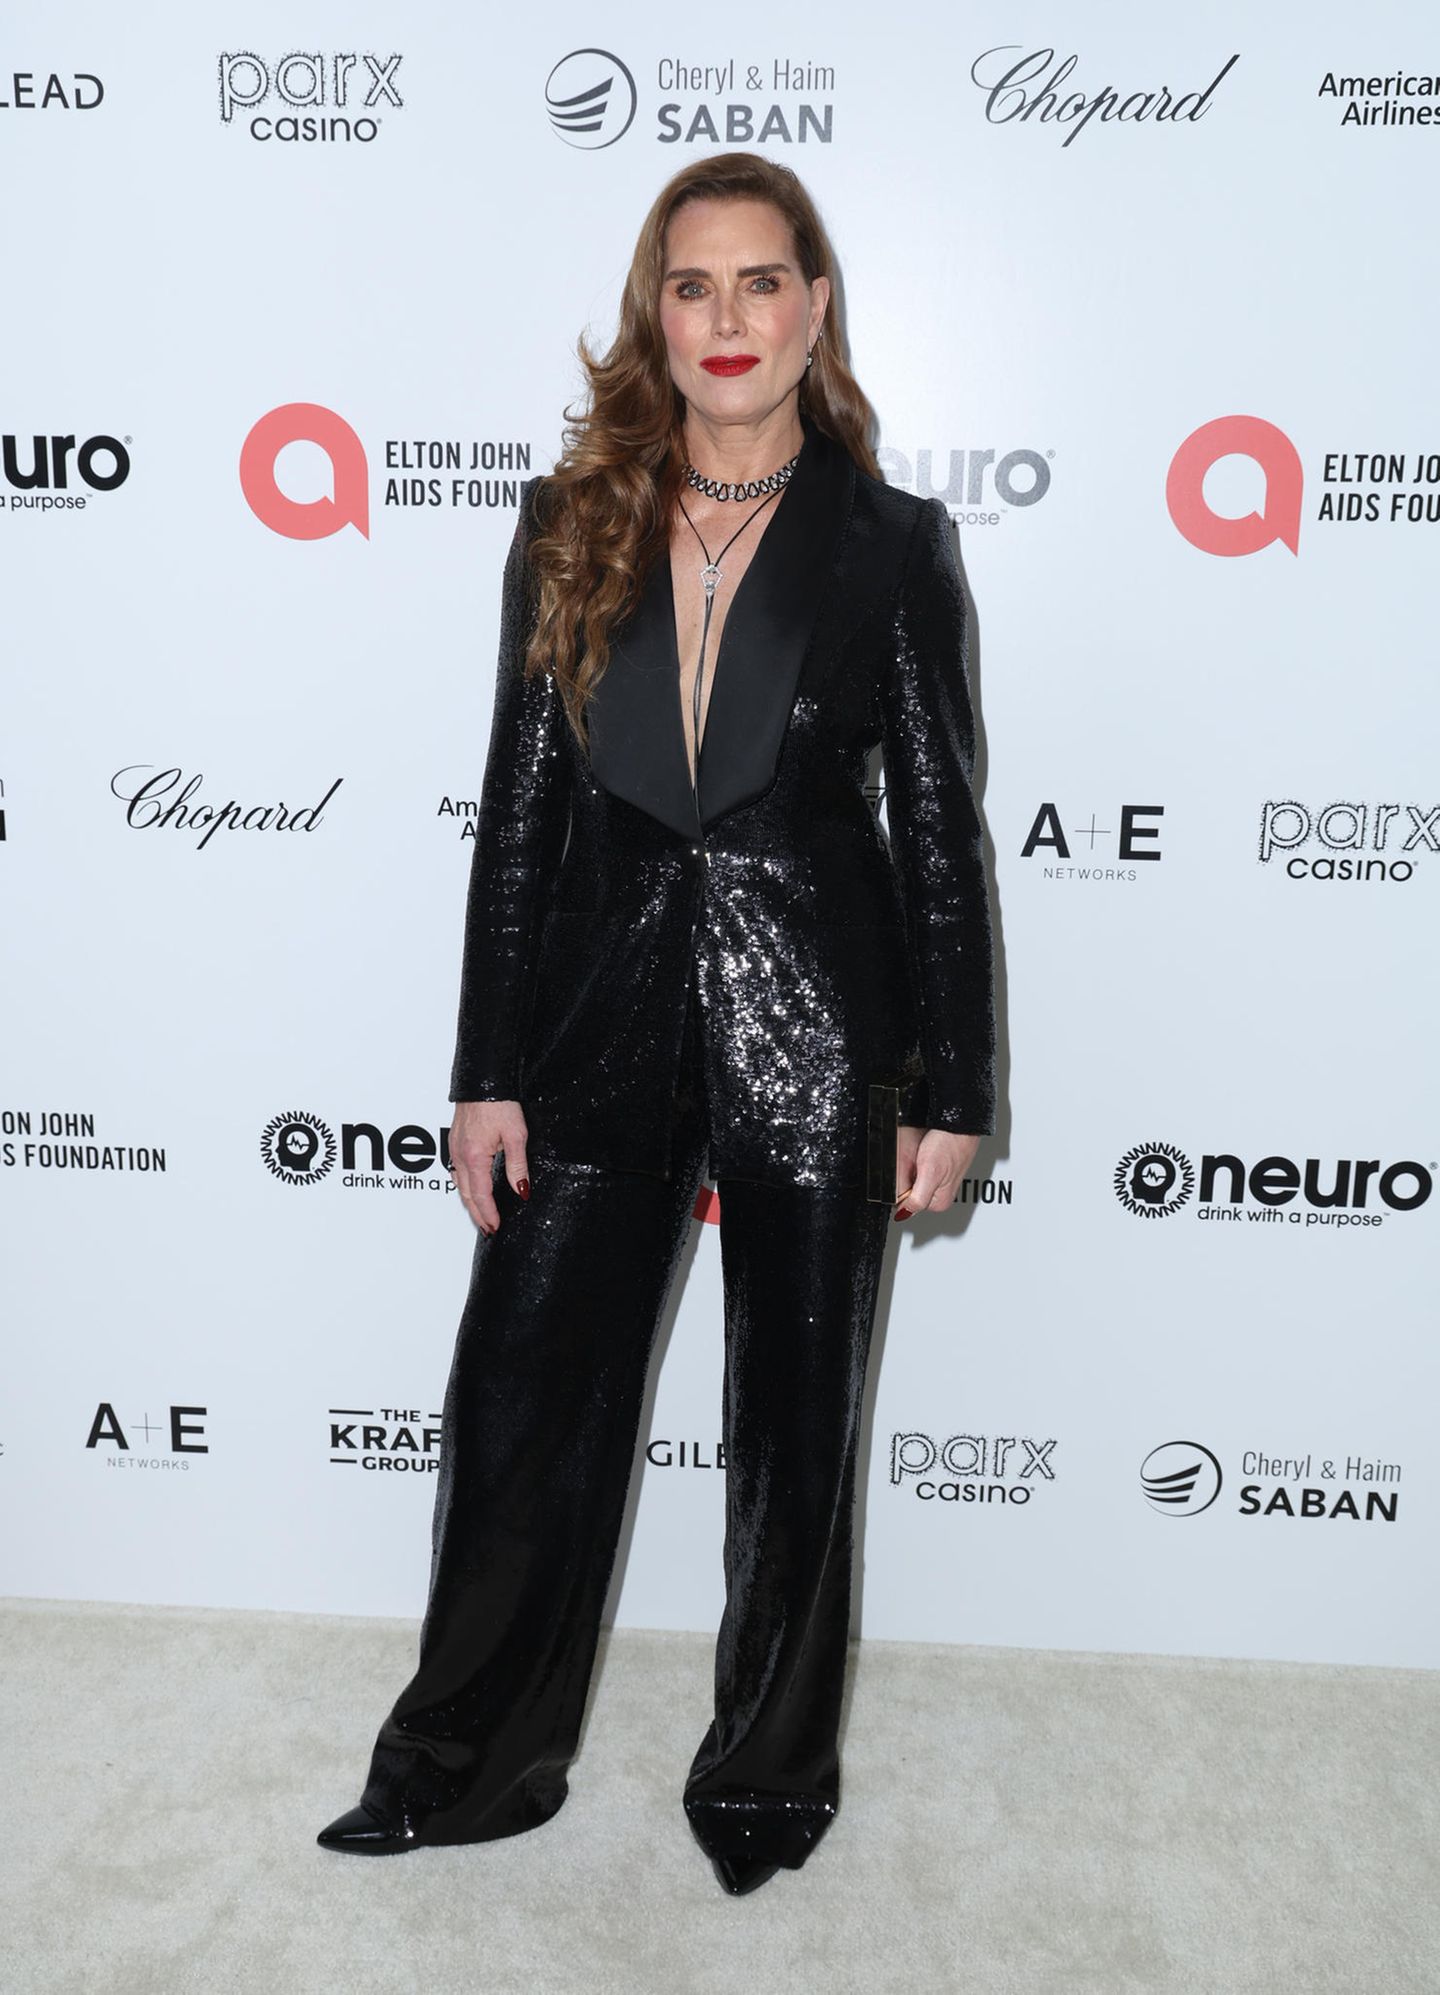 Brooke Shields entscheidet sich gegen ein Abendkleid, sondern trägt einen funkelnden Pailletten-Suit mit tiefem Ausschnitt auf der Elton John Viewing Party.